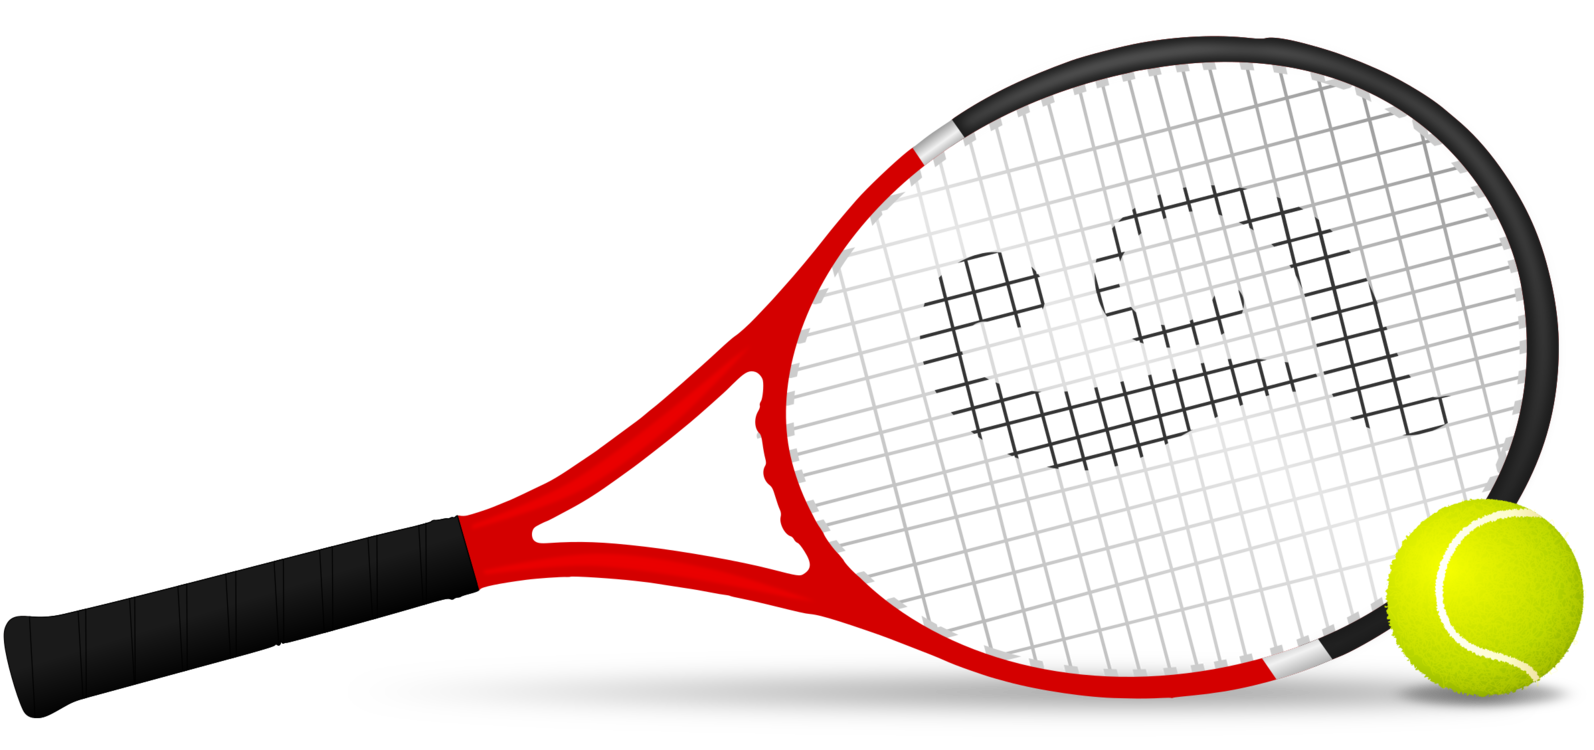 Tennis Equipment And Supplies,Tennis Racket,Rackets